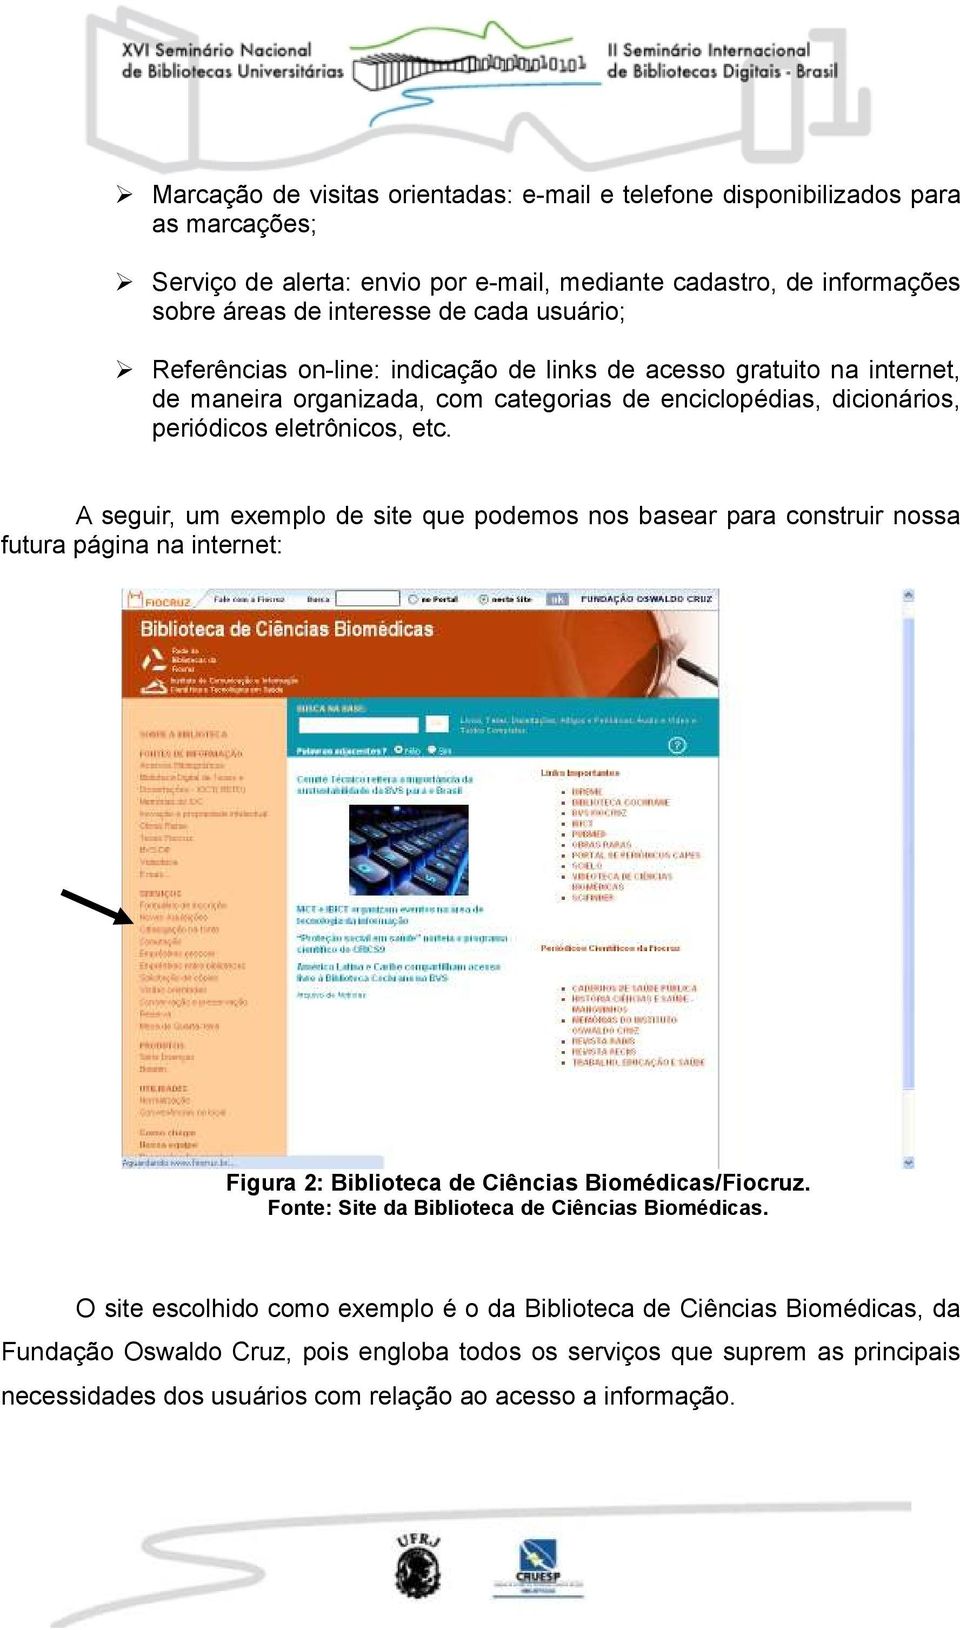 A seguir, um exemplo de site que podemos nos basear para construir nossa futura página na internet: Figura 2: Biblioteca de Ciências Biomédicas/Fiocruz.